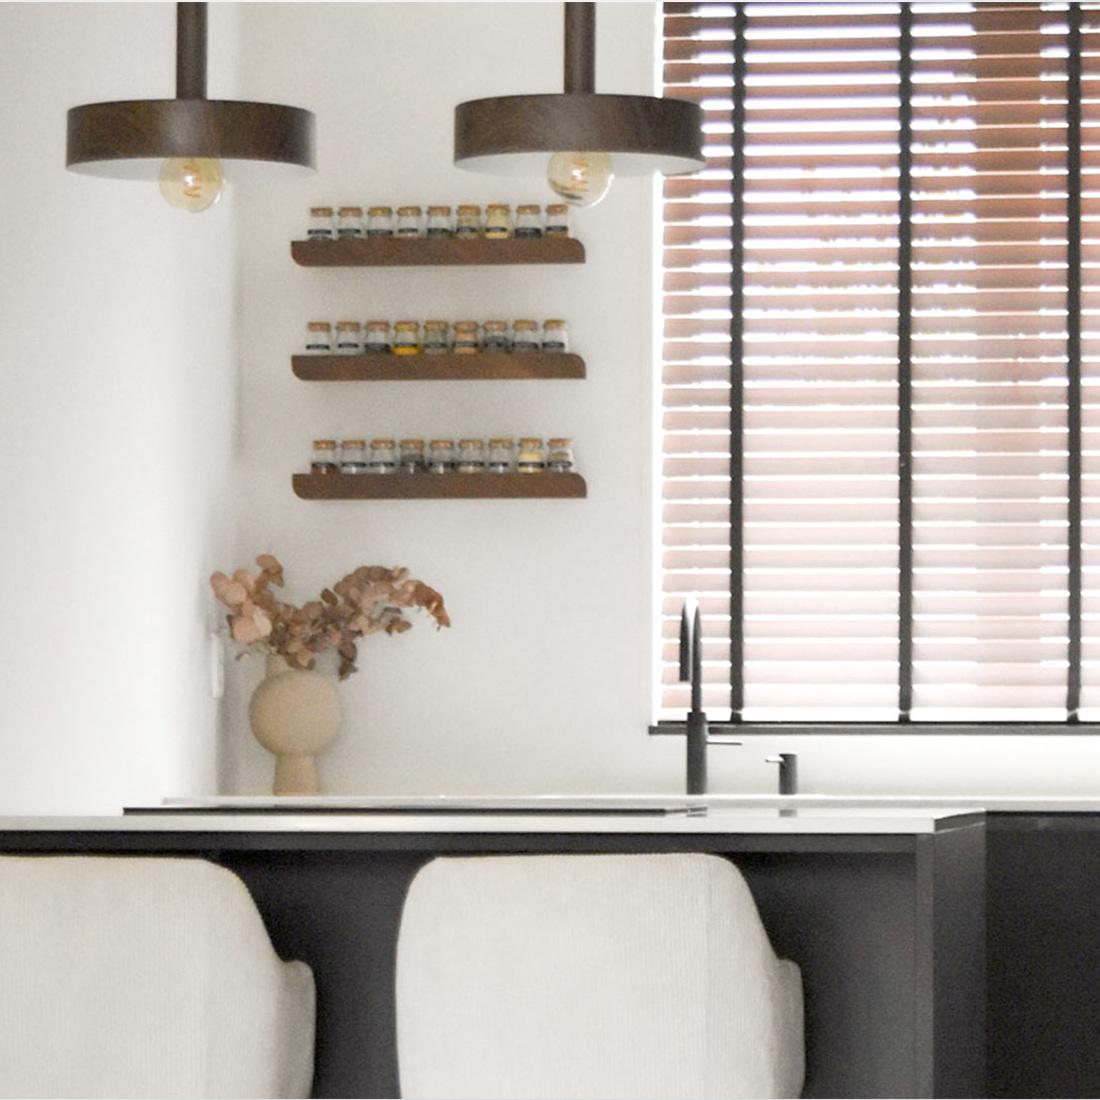 Unser Regal Cielo ist ein einzigartiges, minimalistisches Wandelement, das sich perfekt für die Platzierung von Dekorationen eignet. Das sorgfältige Design hebt die Holzmaserung hervor und verfügt über eine vordere Leiste. Das Design wird durch die